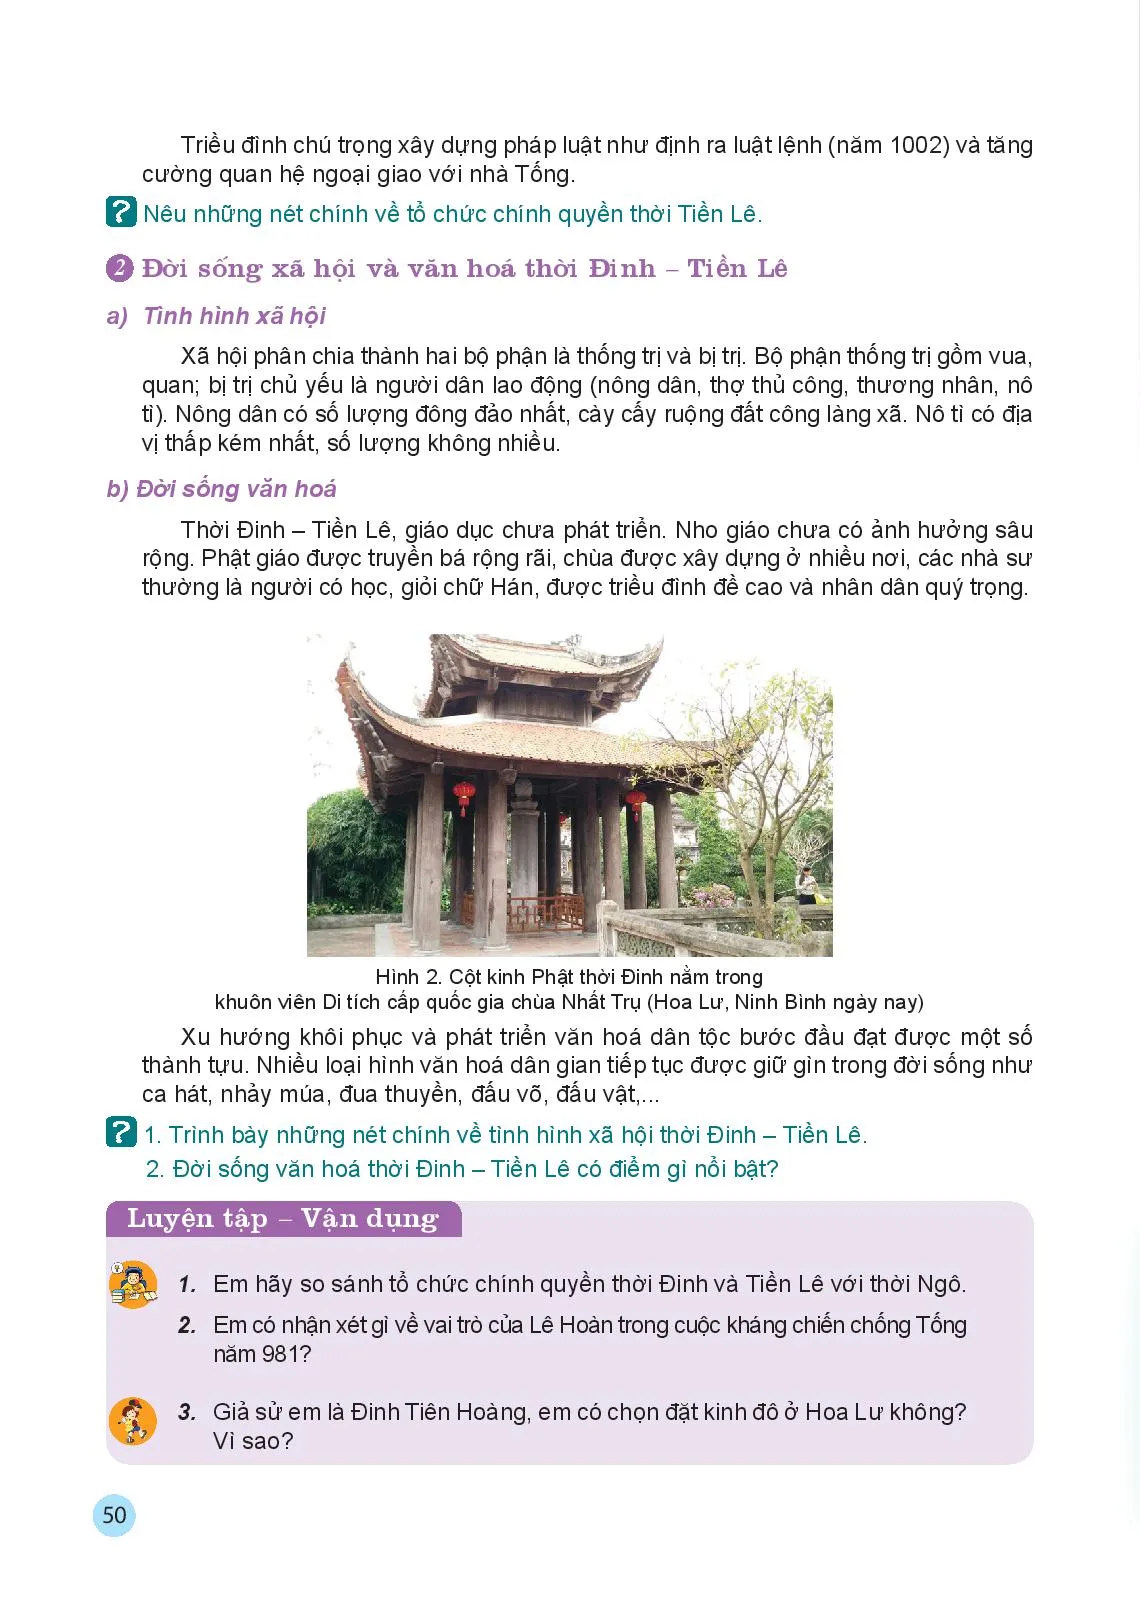 Bài 10 Đại Cổ Việt thời Đinh và Tiền Lê (968 – 1009)